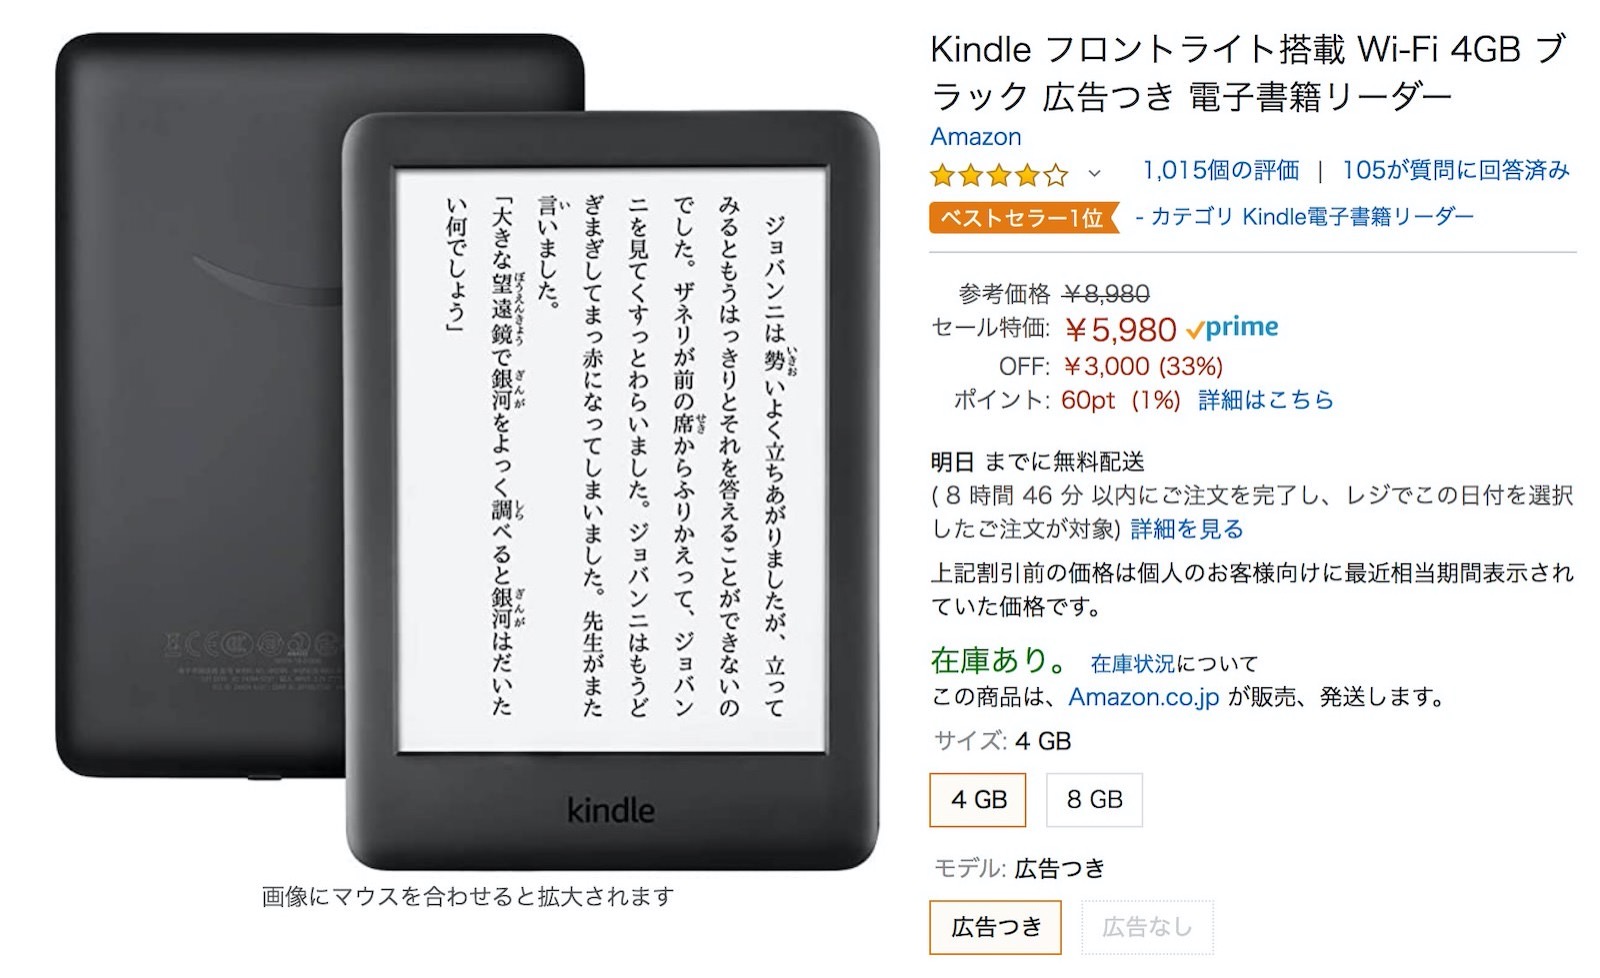 Kindle tablet on sale